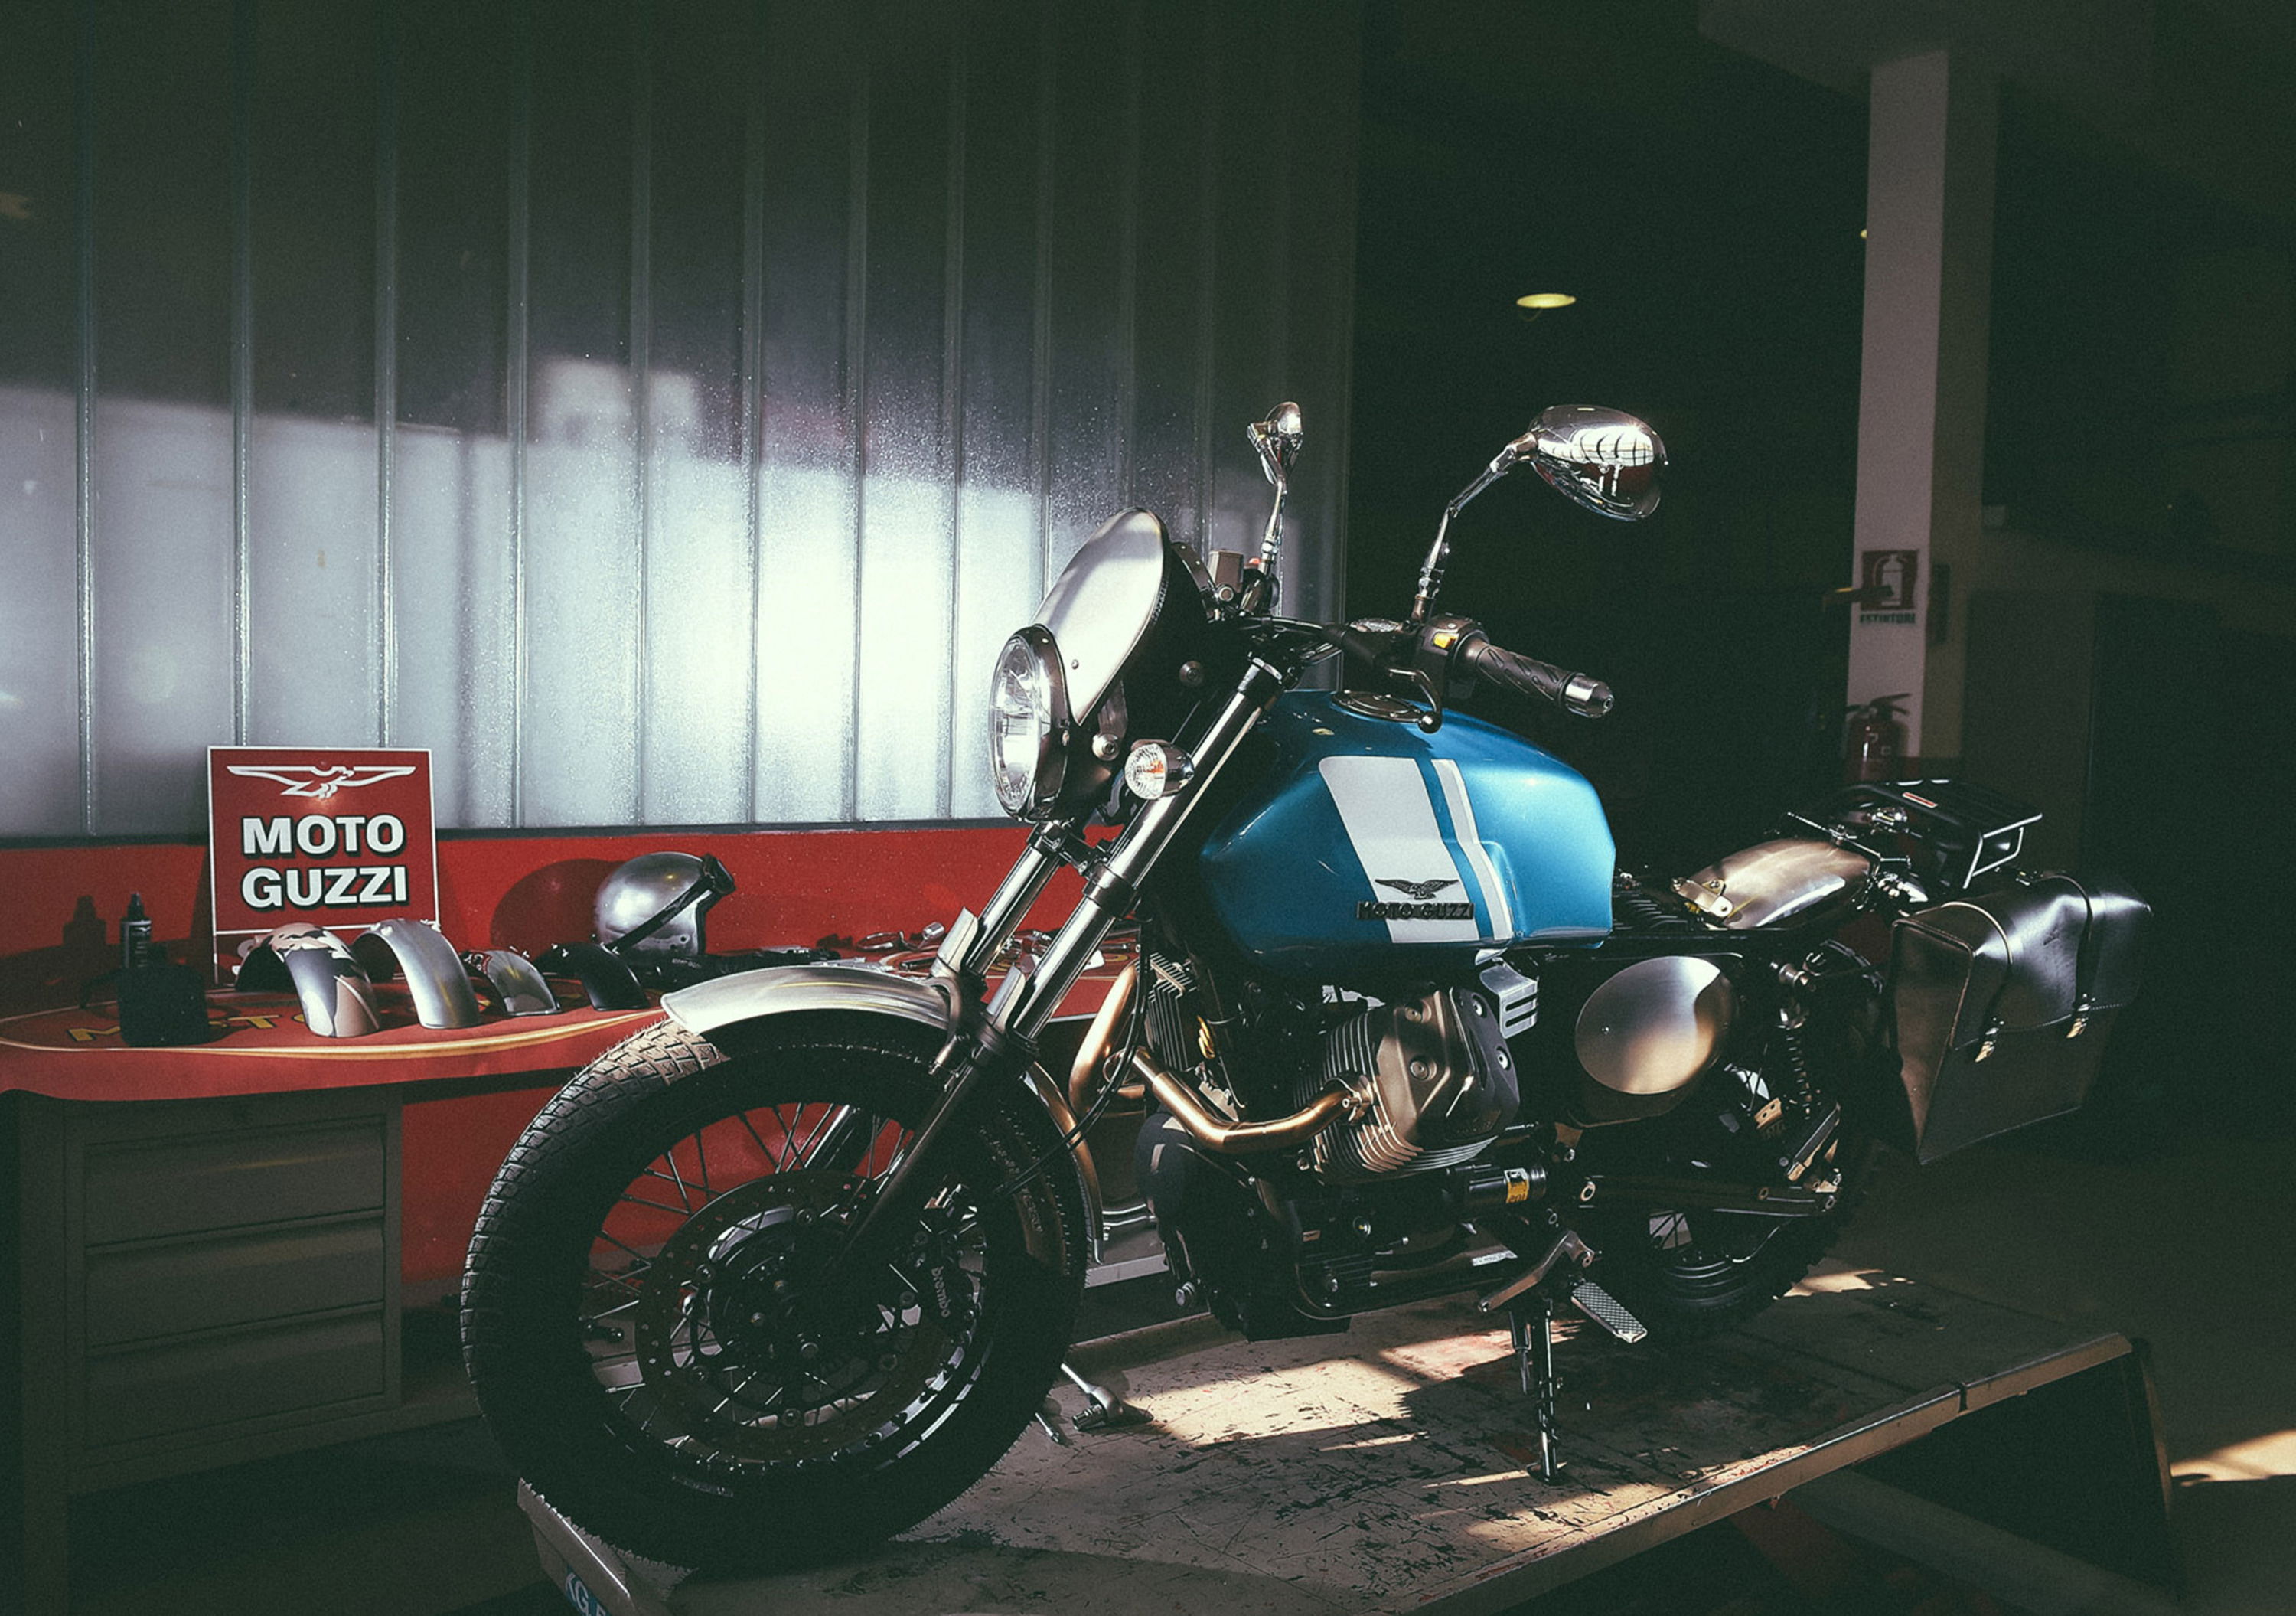 Moto Guzzi Garage,  la speciale officina dedicata alla V7